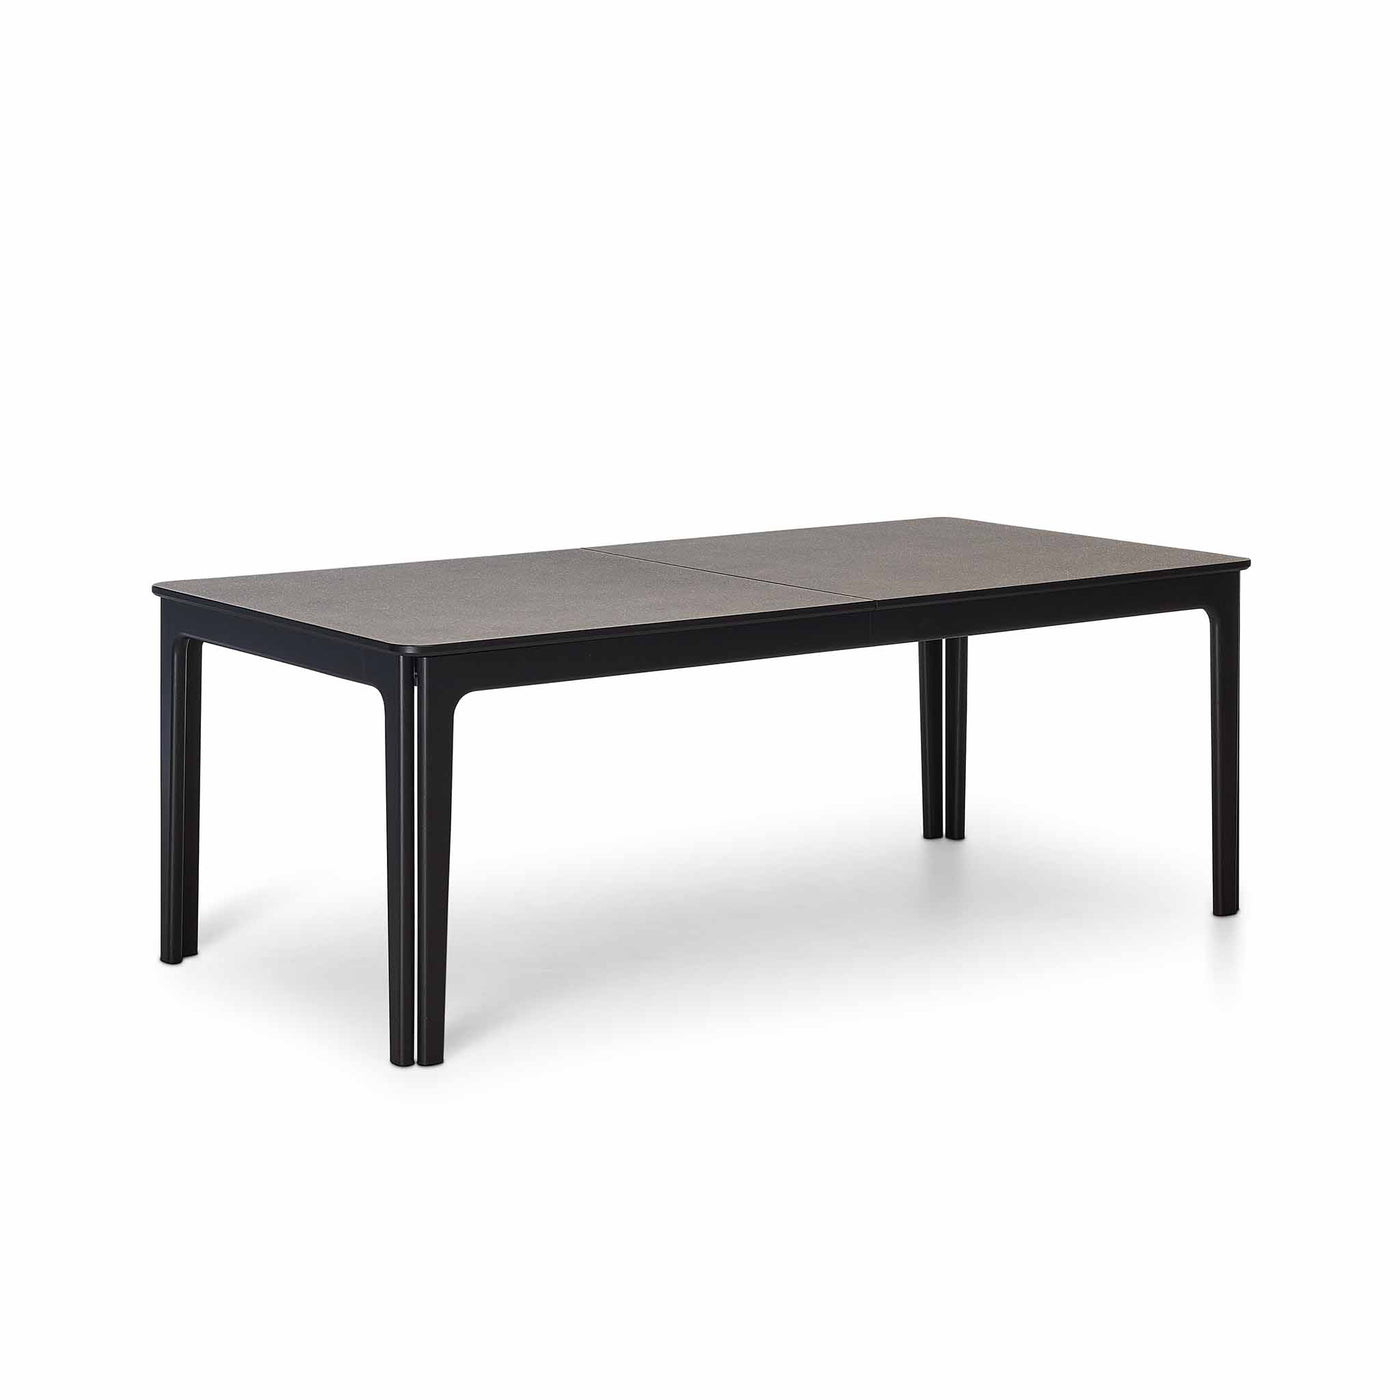 SM 27 spisebord fra Skovby i med top i grå sten laminat og ben i sortlakeret eg